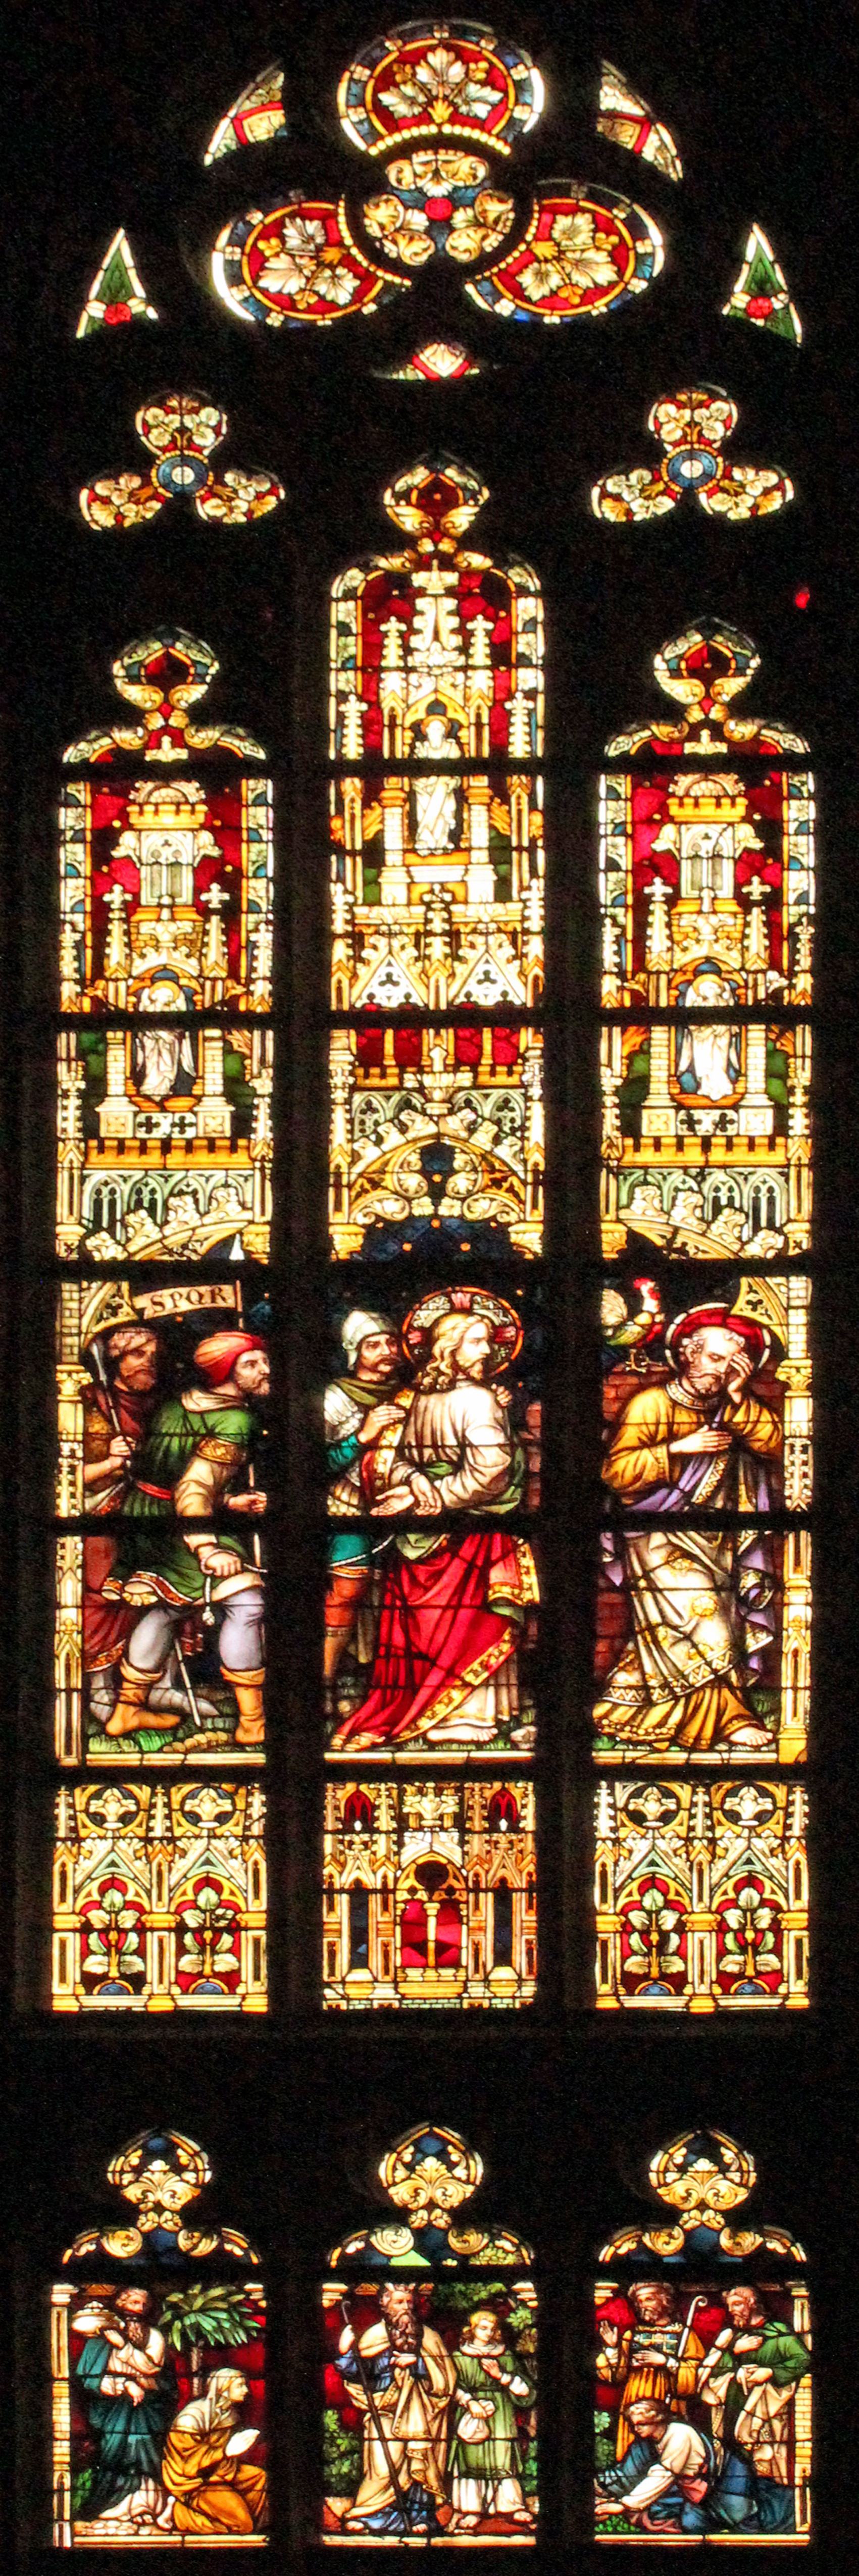 Fenster Gefangennahme Jesu (c) H. Brouwers